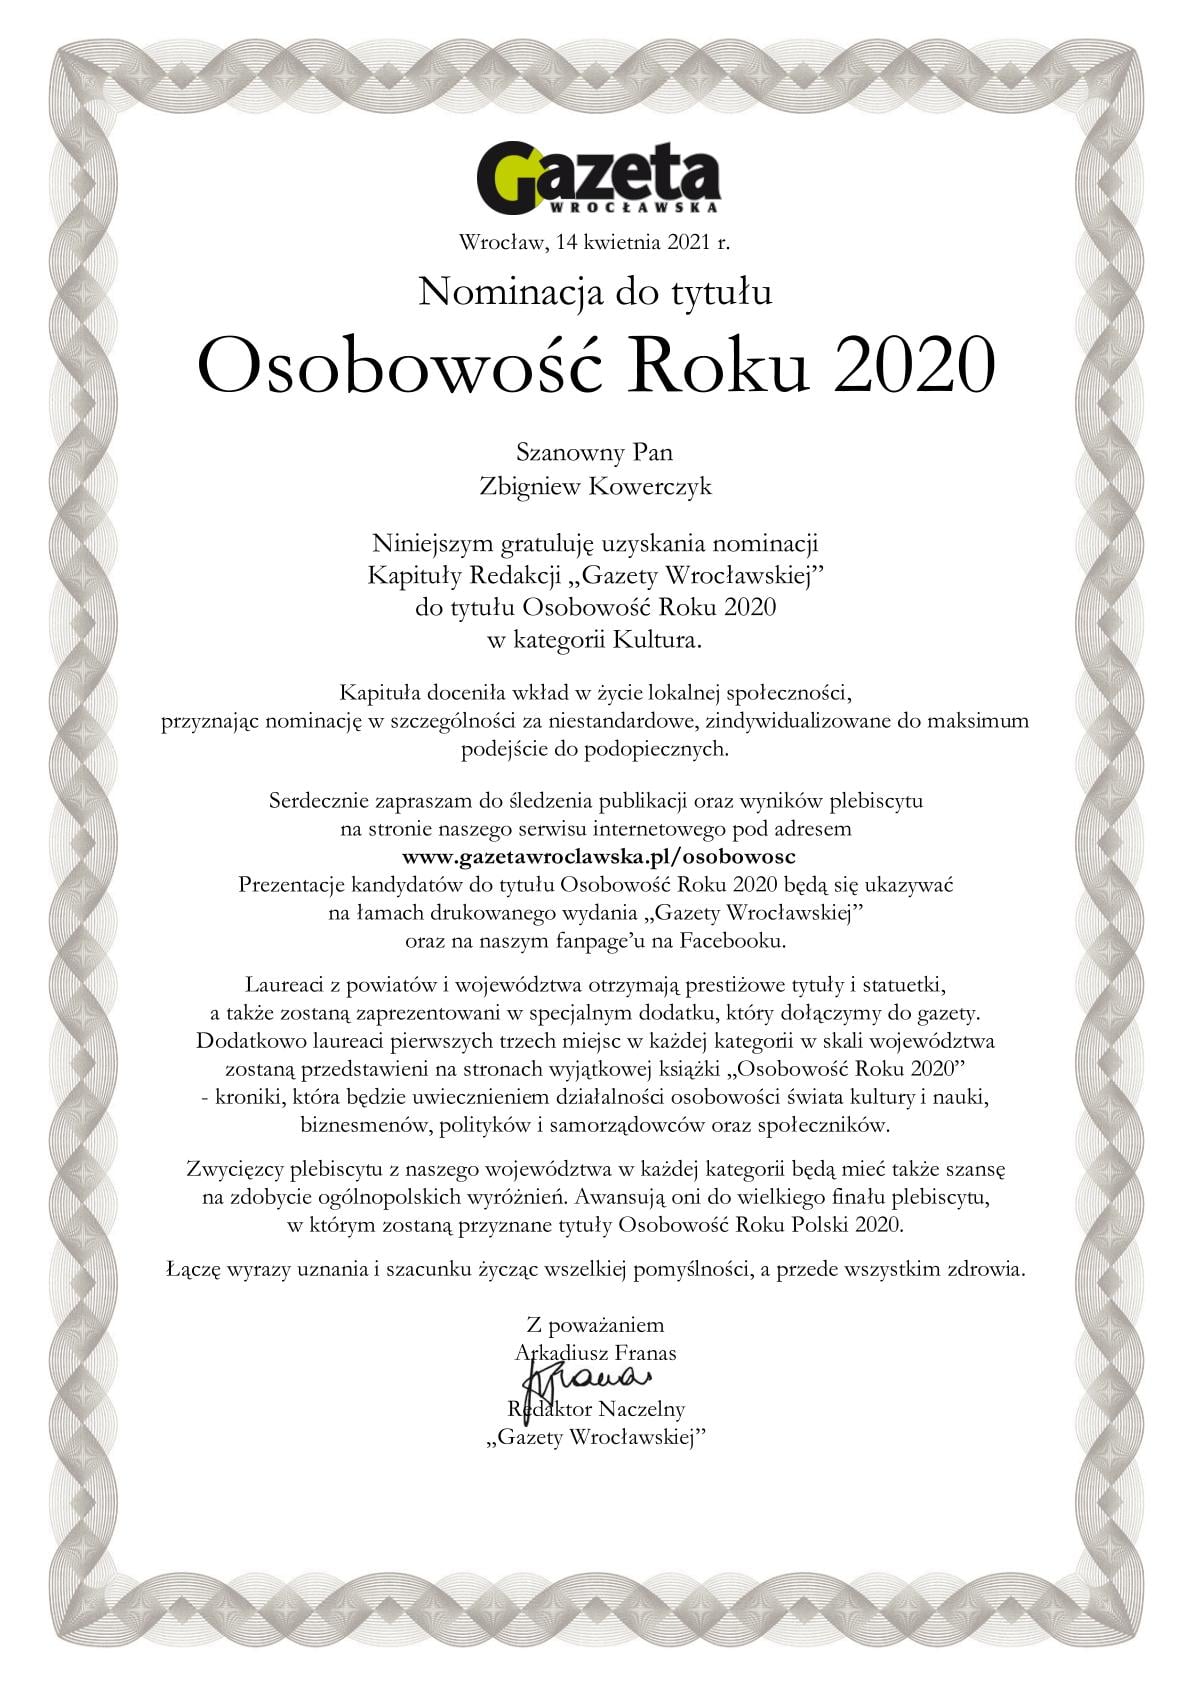 Nominacja do tytułu Osobowość Roku 2020 Gazety Wrocławskiej